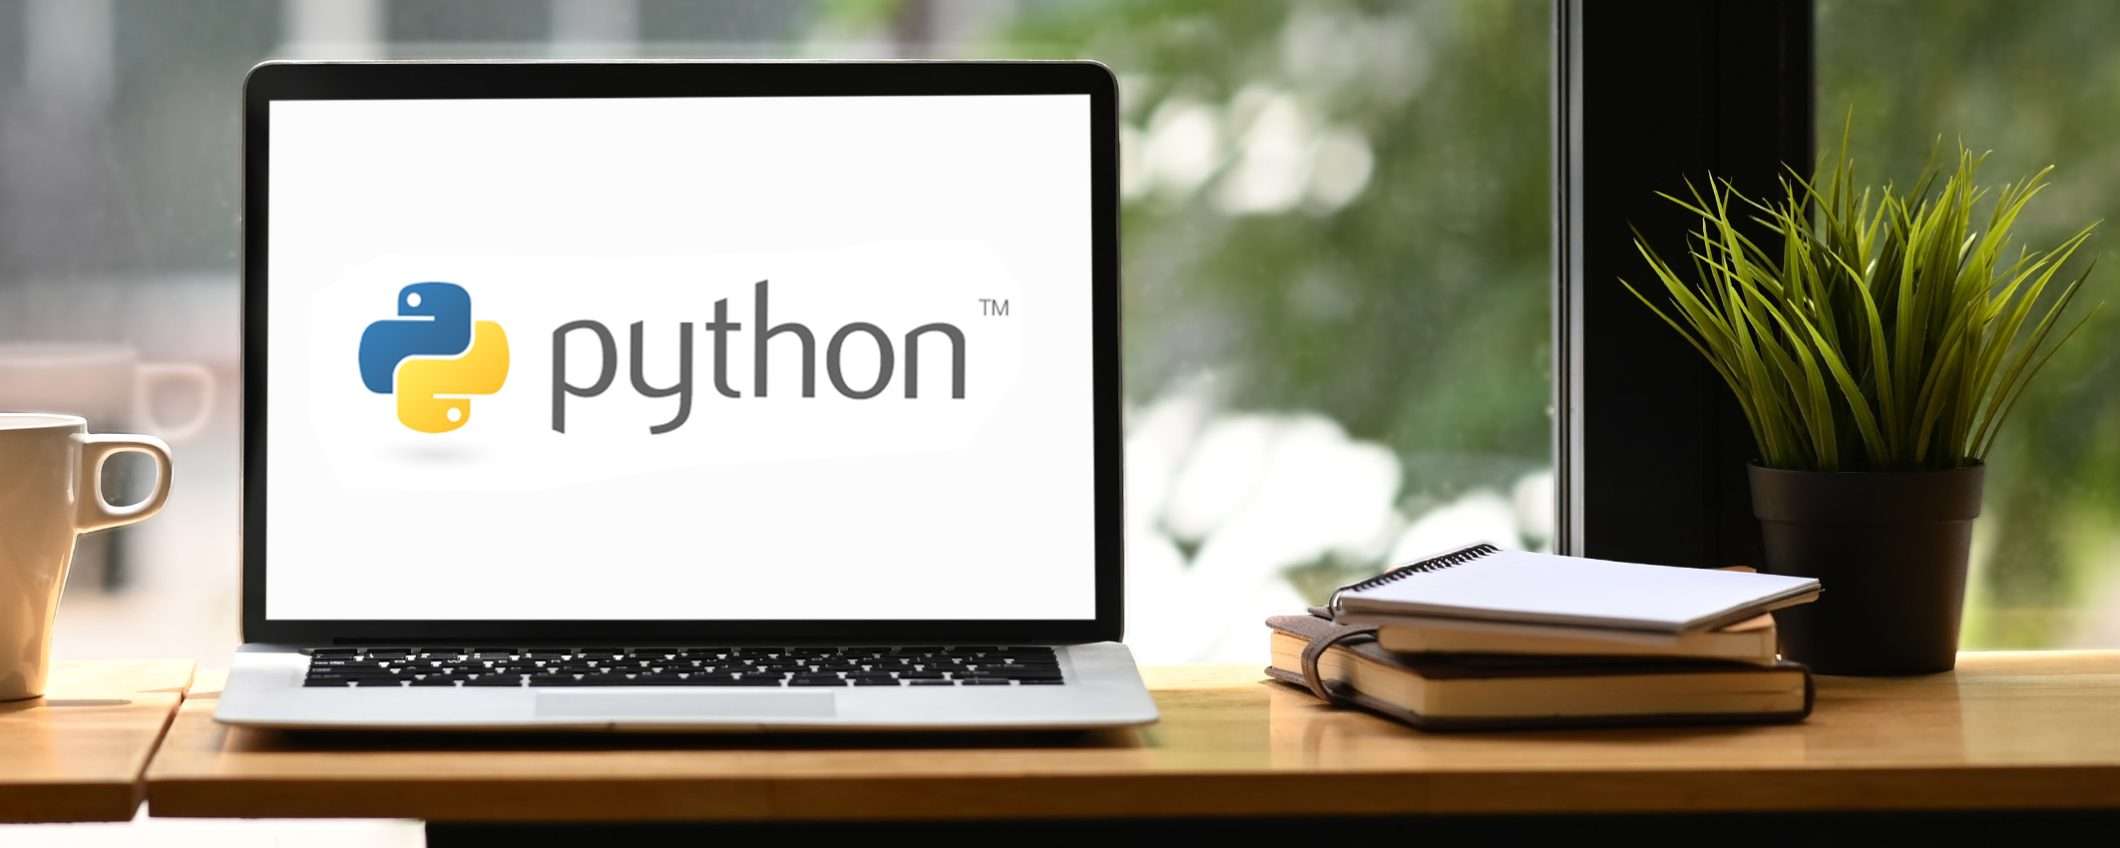 Vuoi imparare a programmare in Python? Ecco il corso completo a 16€